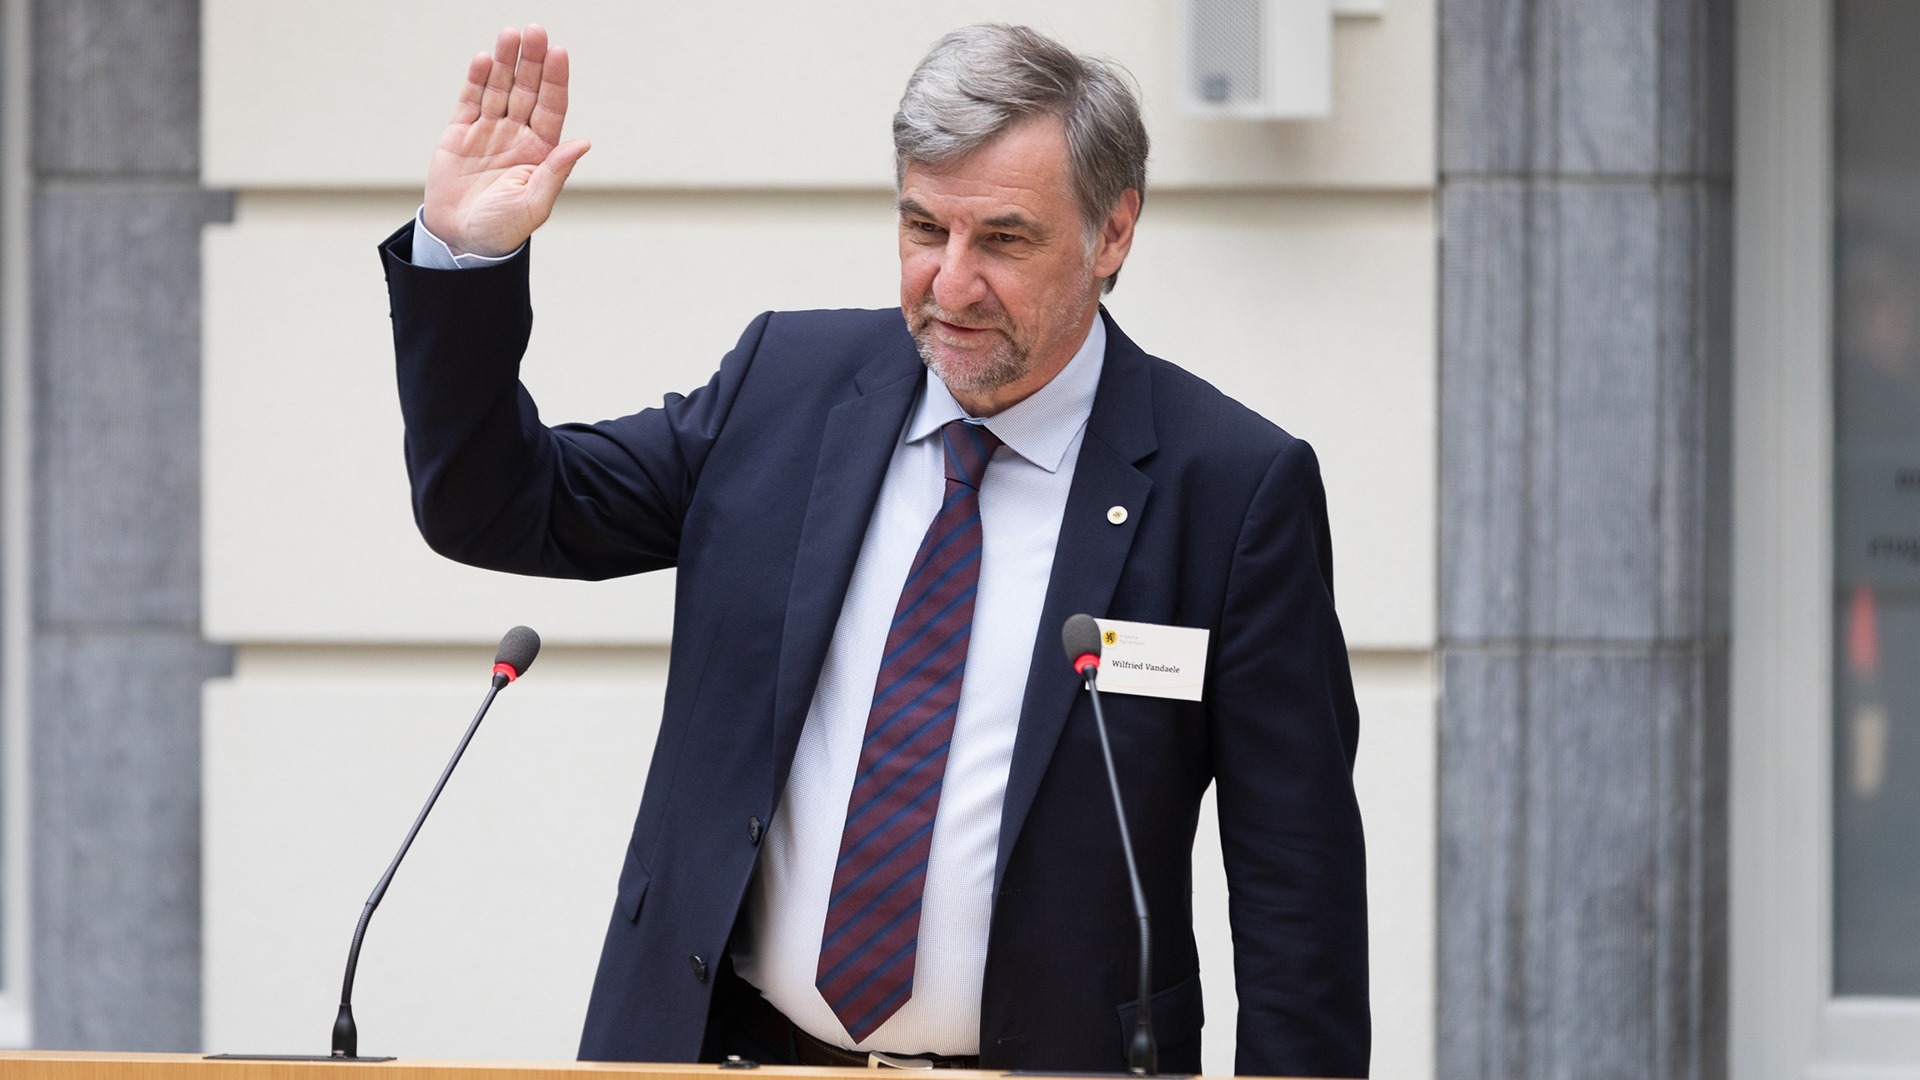 Wilfried Vandaele voorgedragen als voorzitter Vlaams Parlement